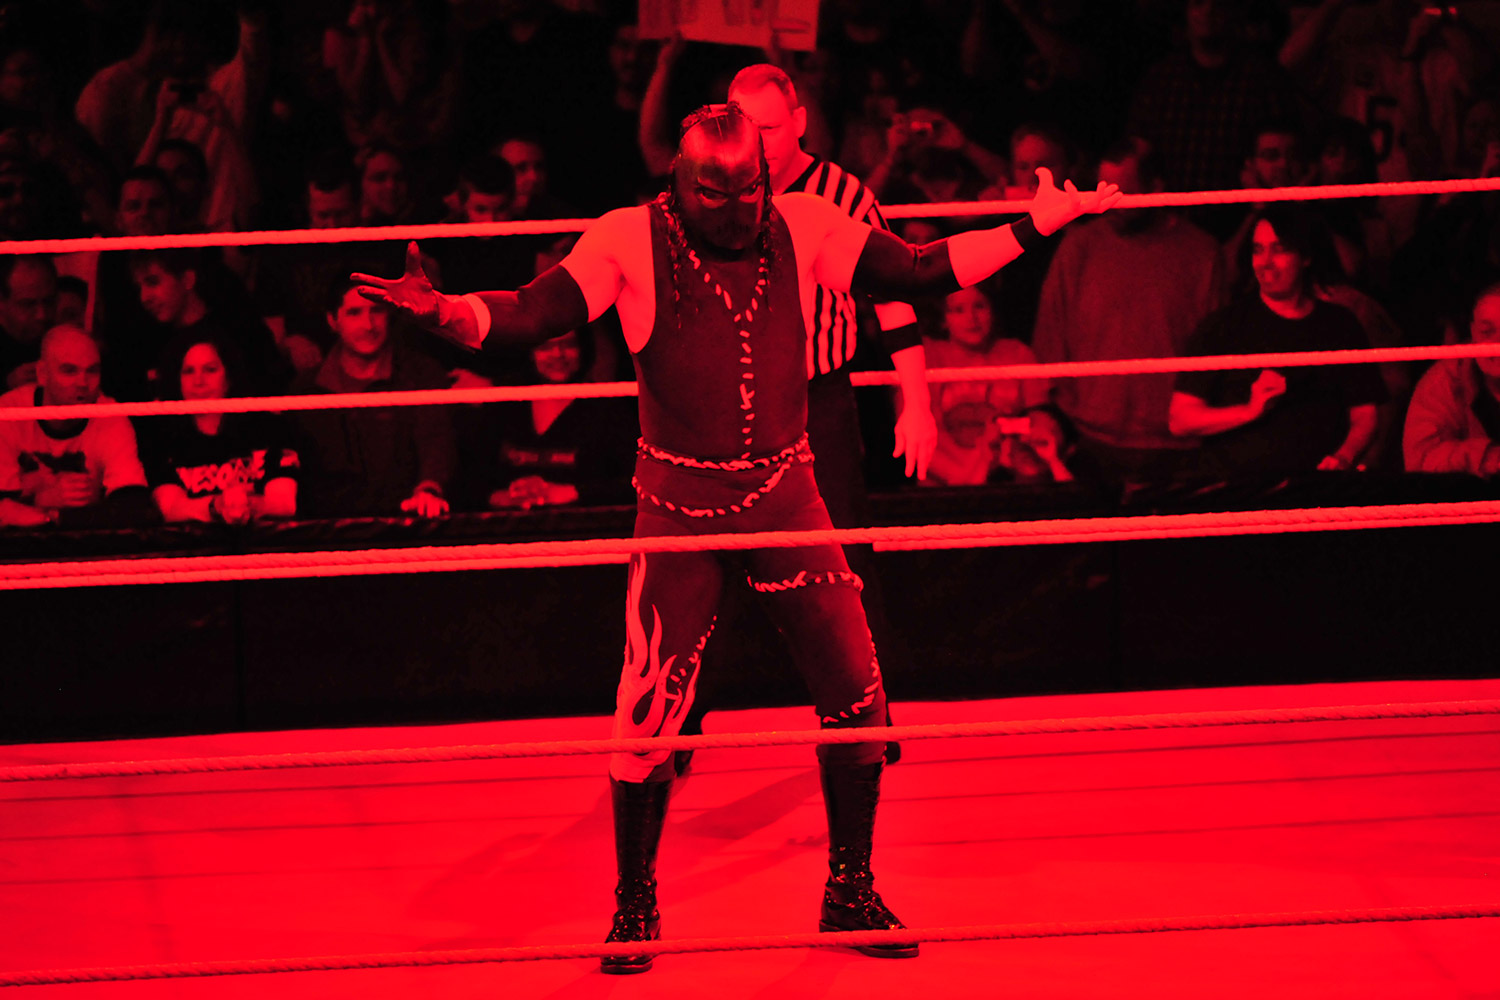 Kane WWE